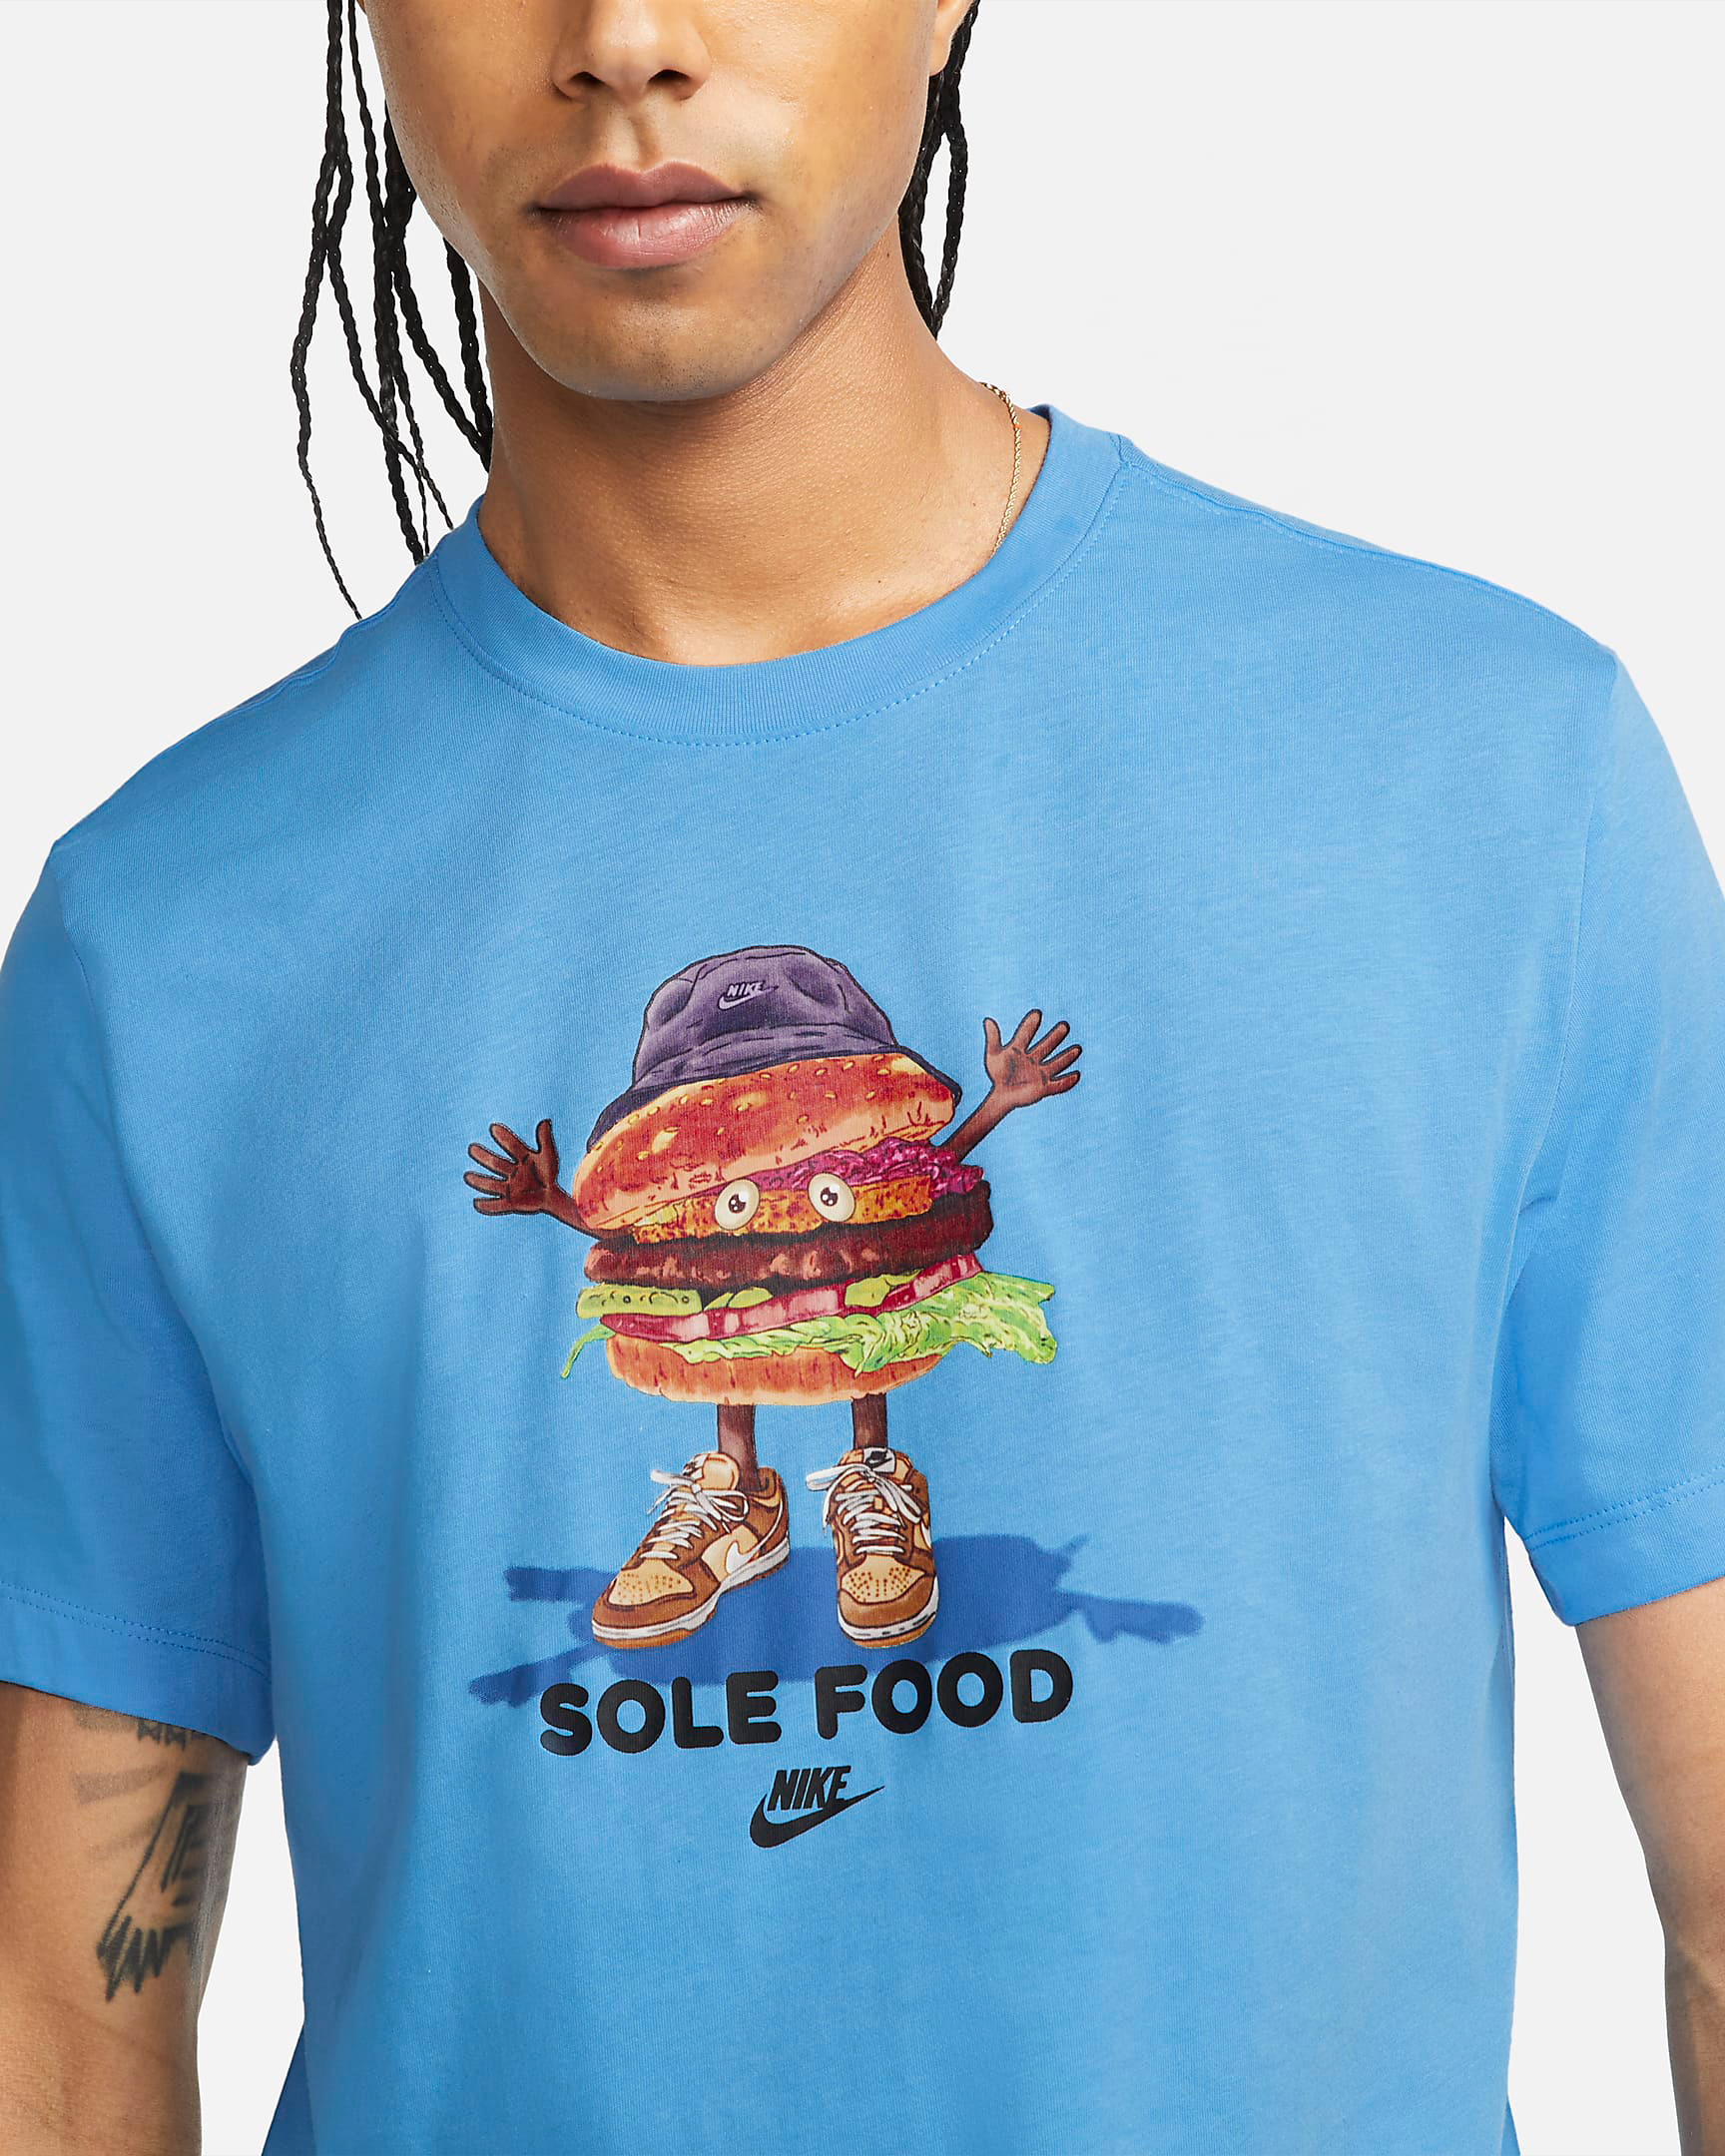 nike-university-blue-sole-food-shirt-2